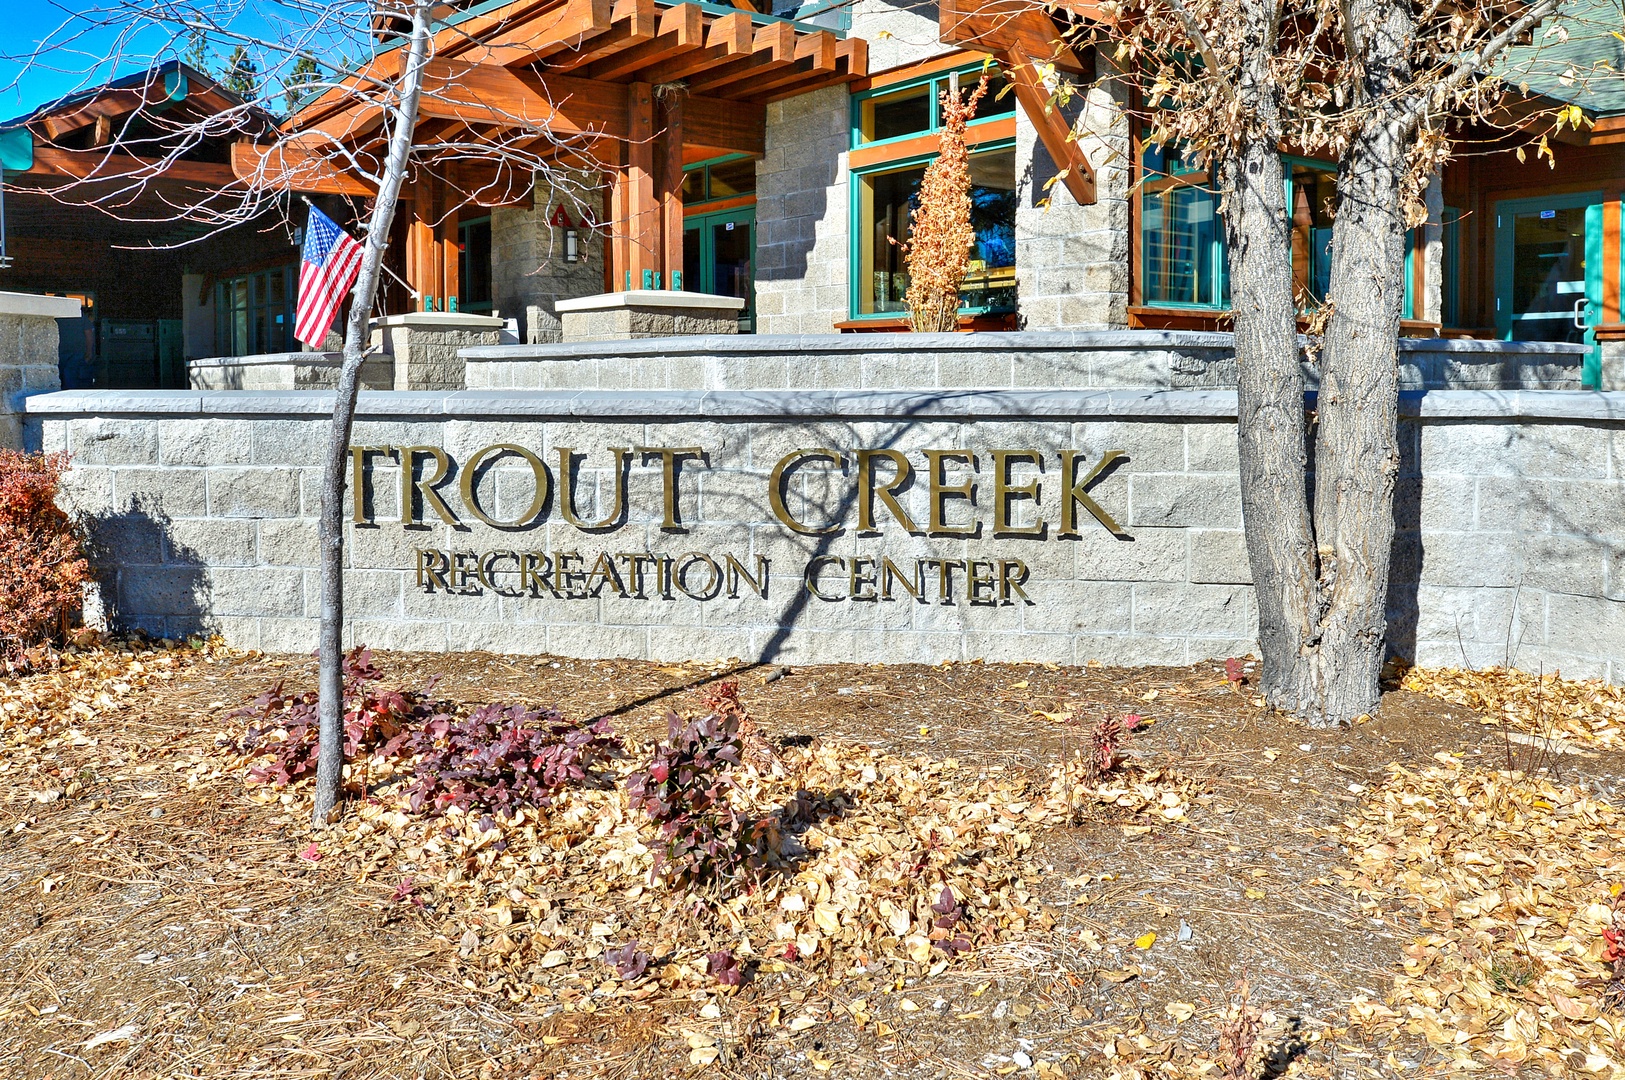 Trout Creek Rec. Center:  Quittin' Time Chalet